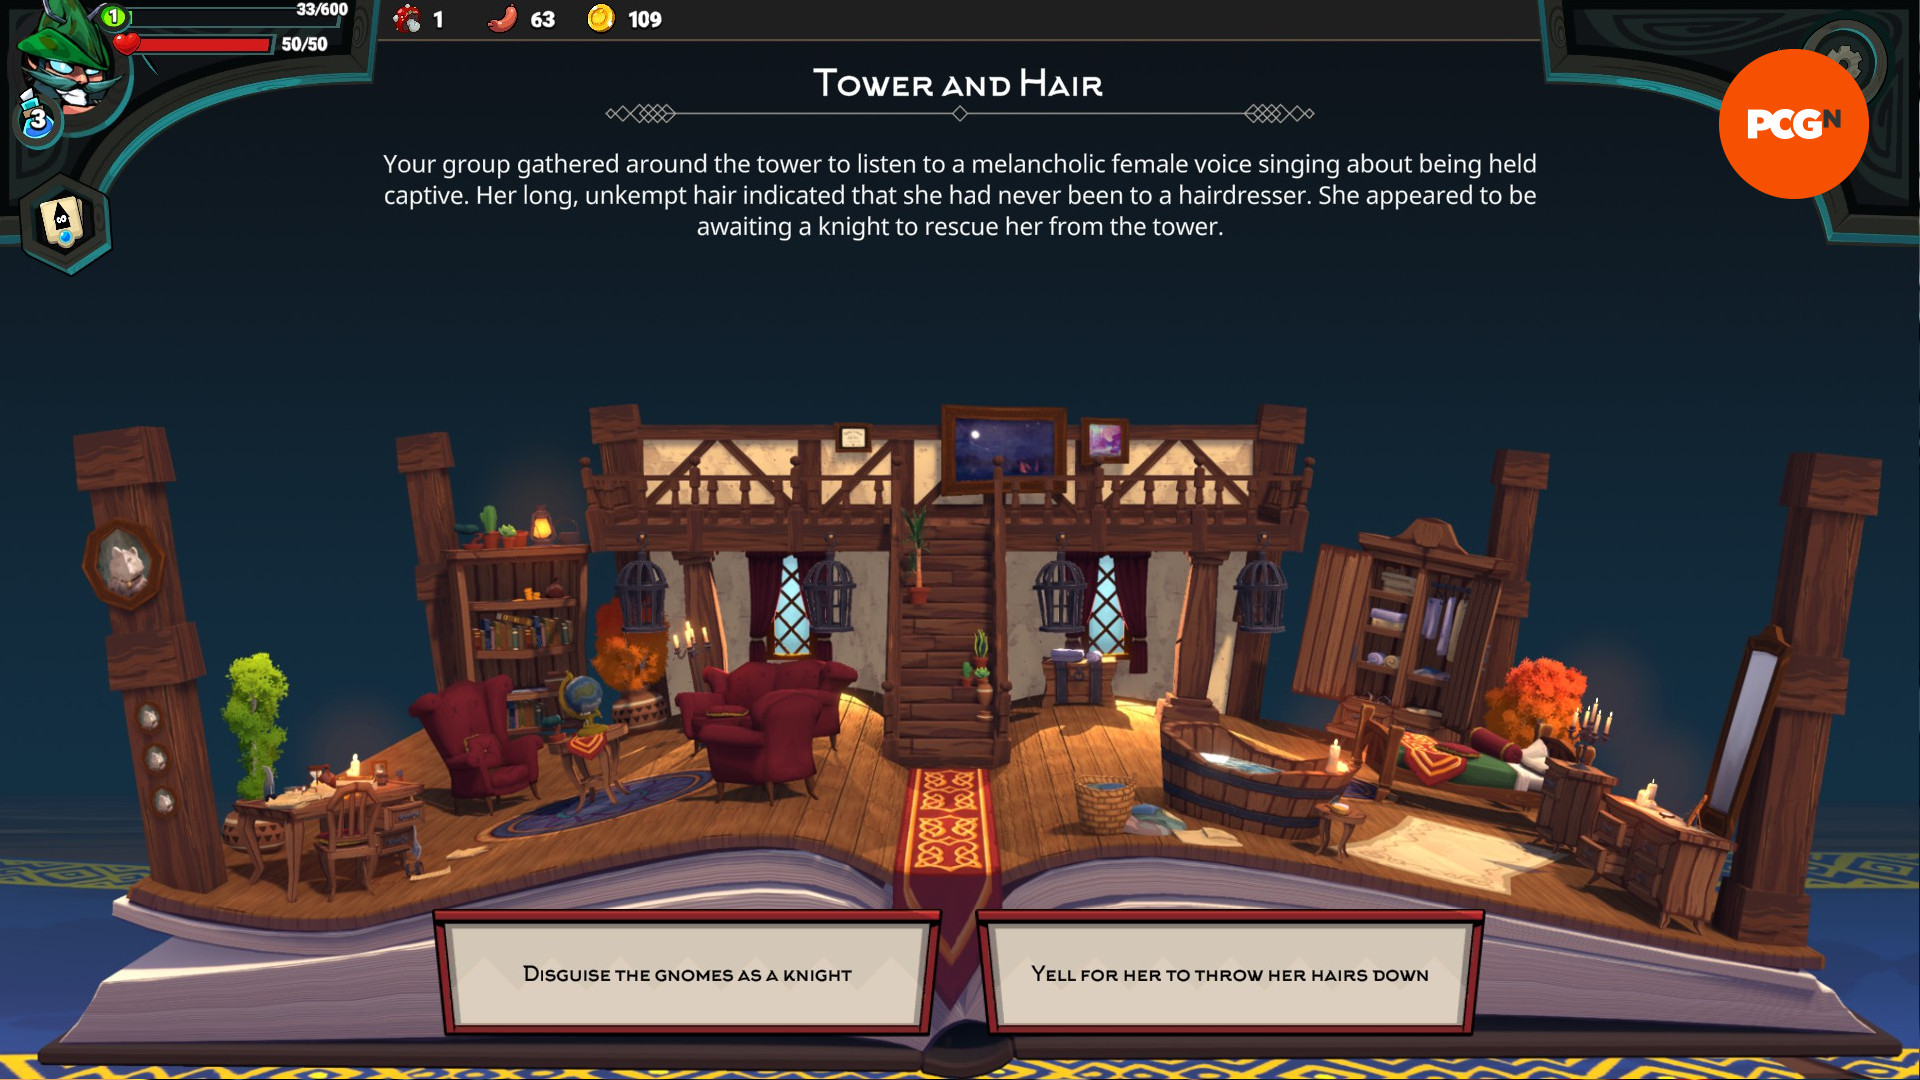 Union of Gnomes: un evento en el que el jugador conoce a una mujer con cabello largo atrapada en una torre y puede 